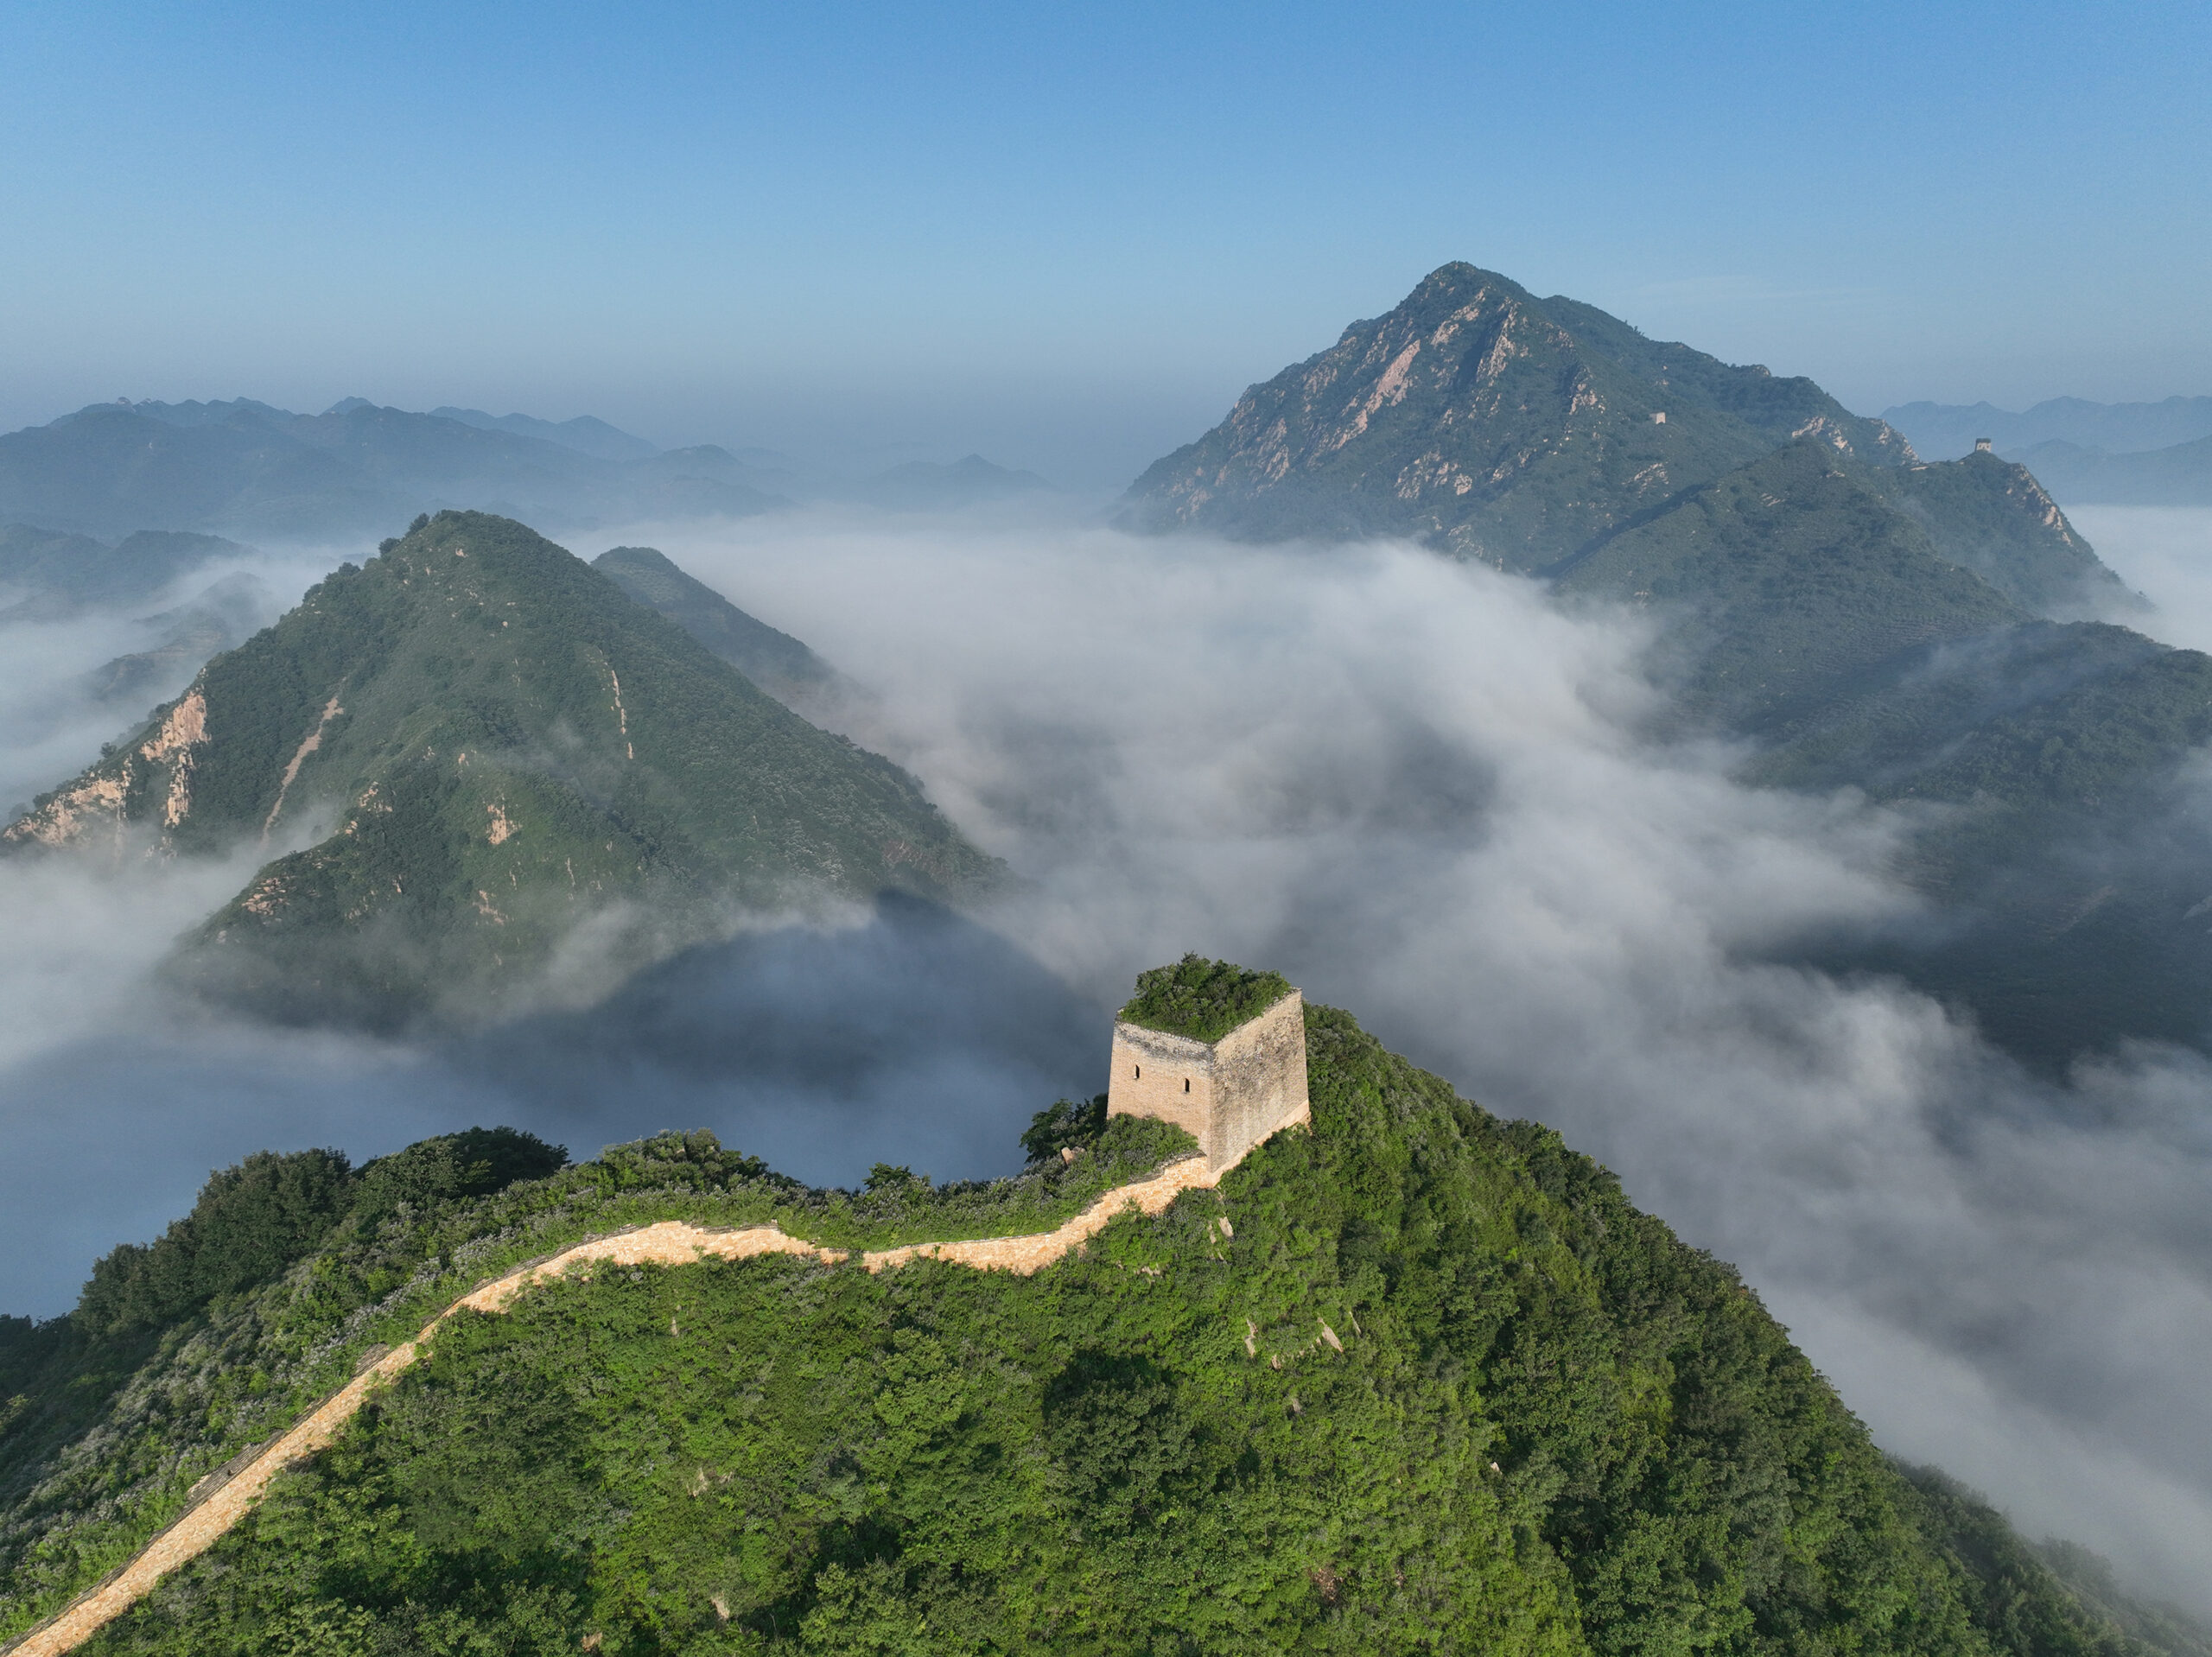 เมฆหมอกขาวห่มคลุม 'กำแพงเมืองจีน' ในเหอเป่ย